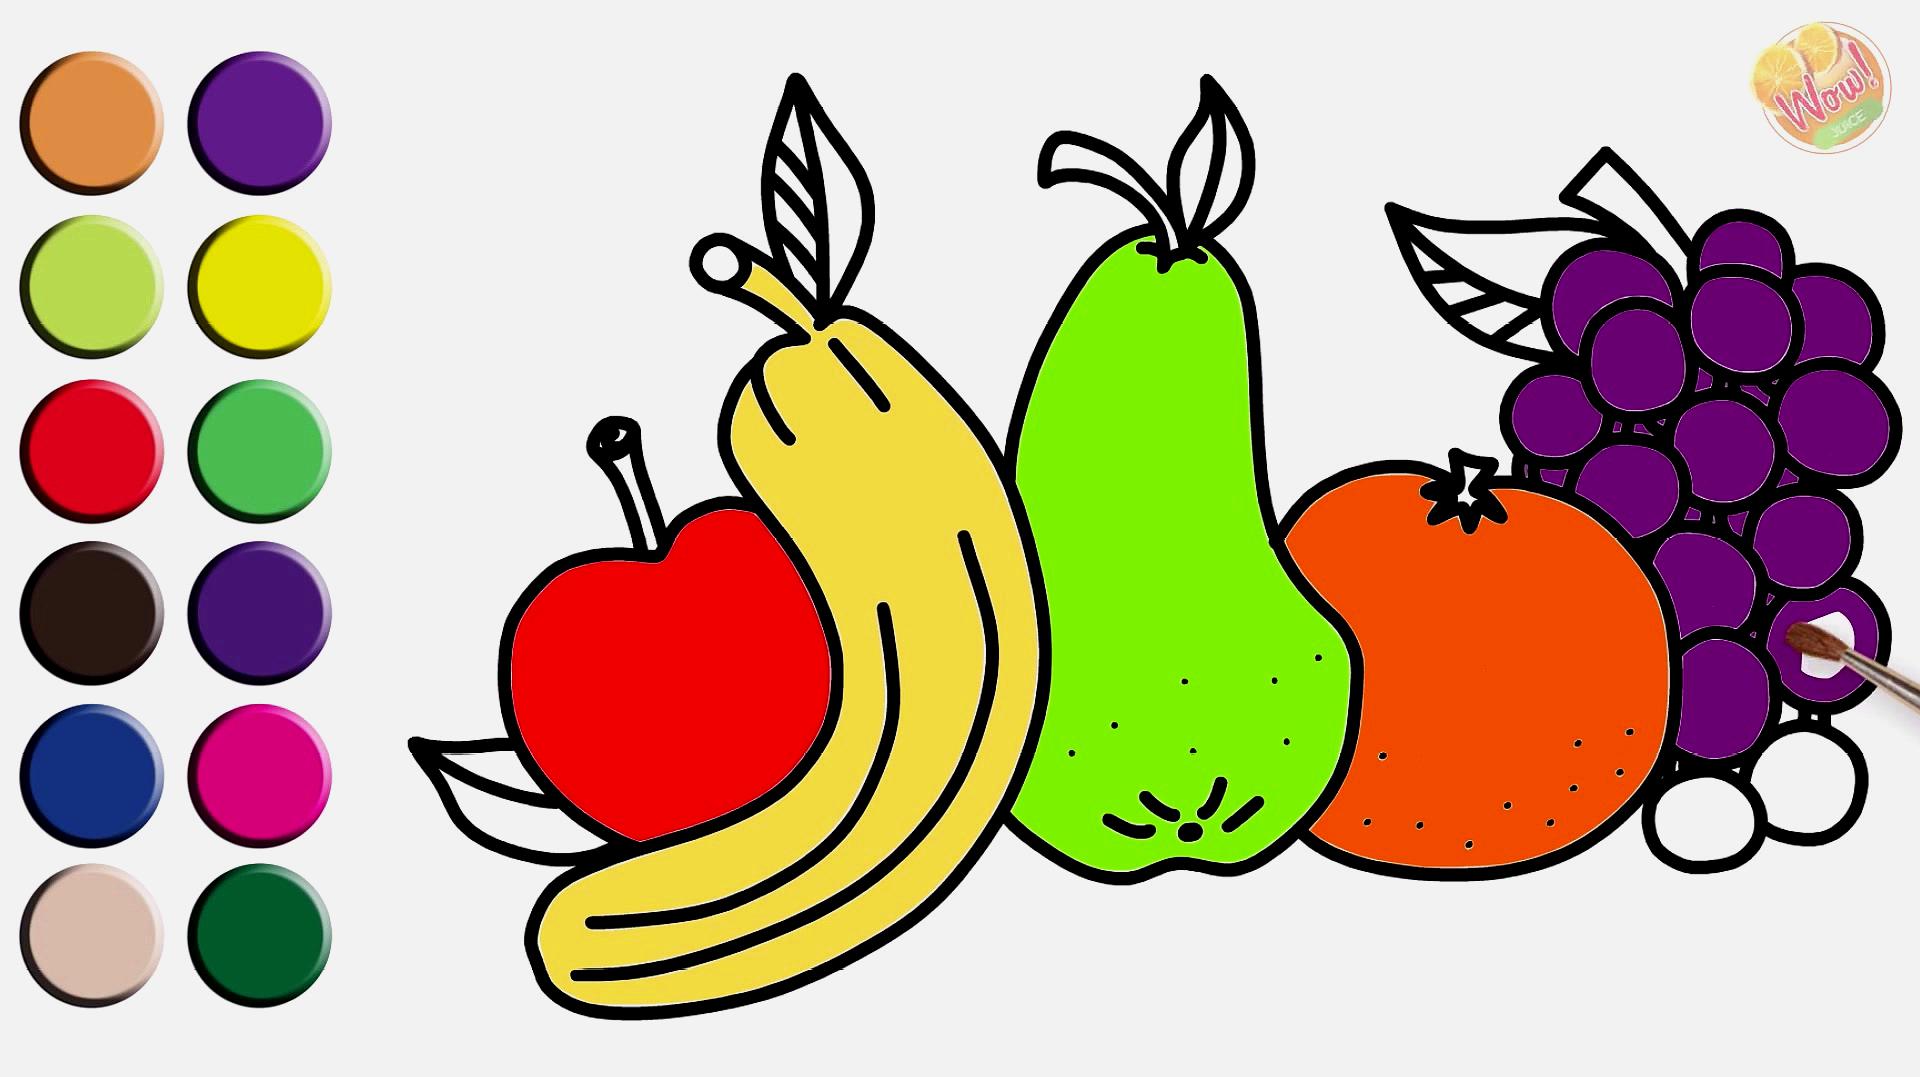 40种水果简笔画 有色图片